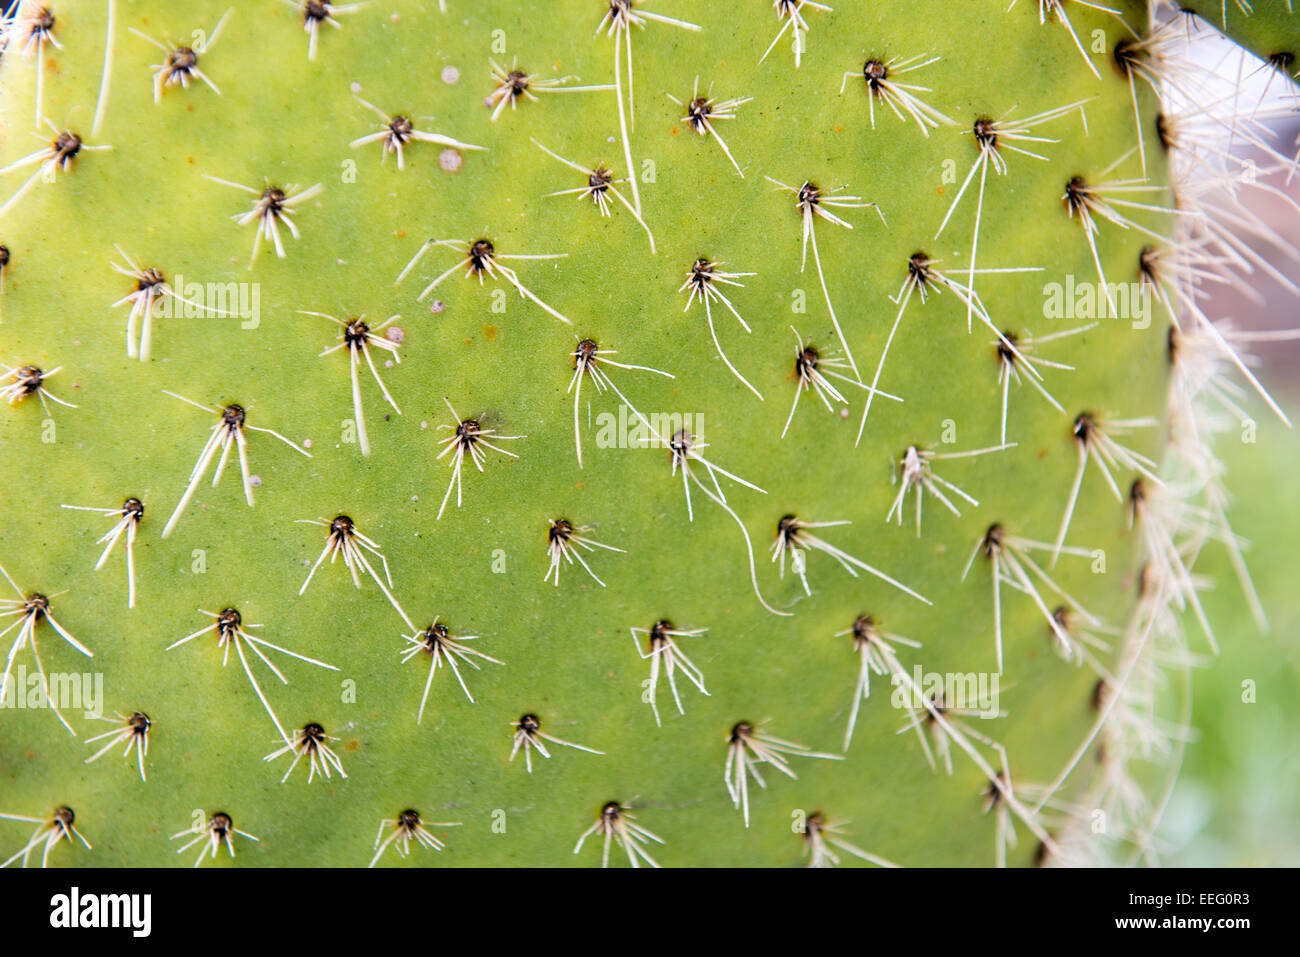 Cactus spine Stock Photo